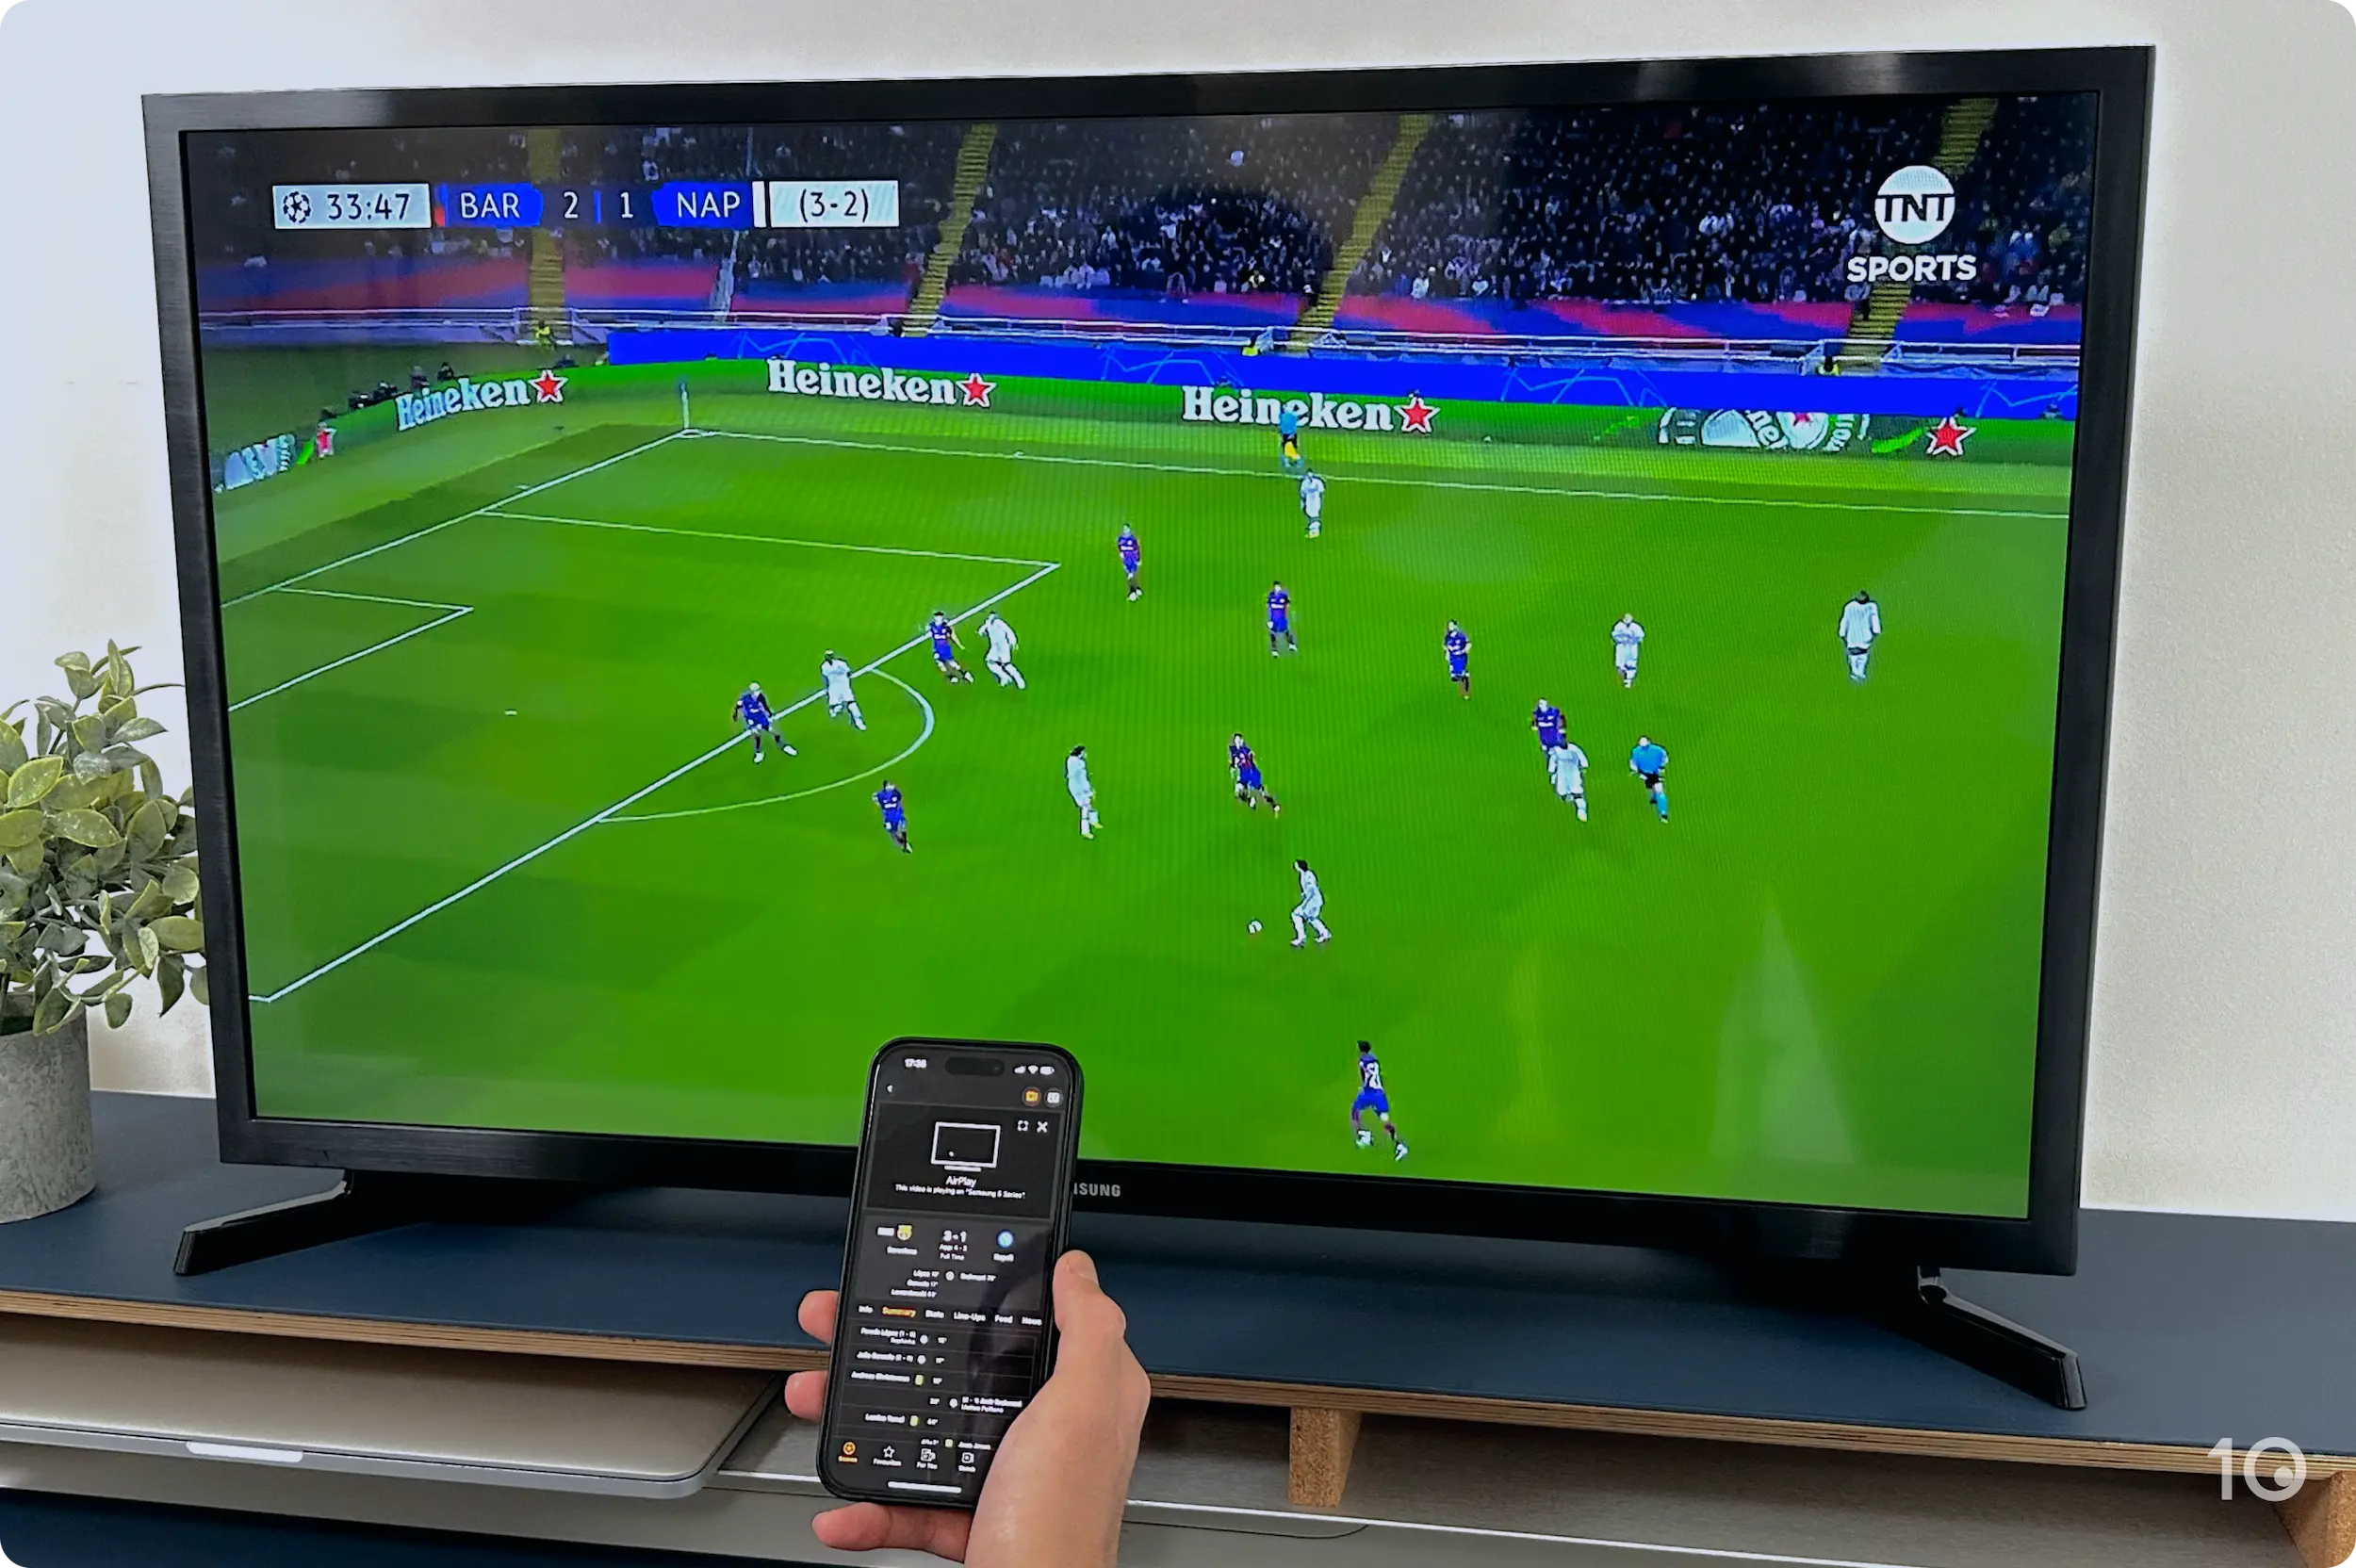 Interfaz de AirPlay para compartir la retransmisión de un partido de la Champions con Apple TV.